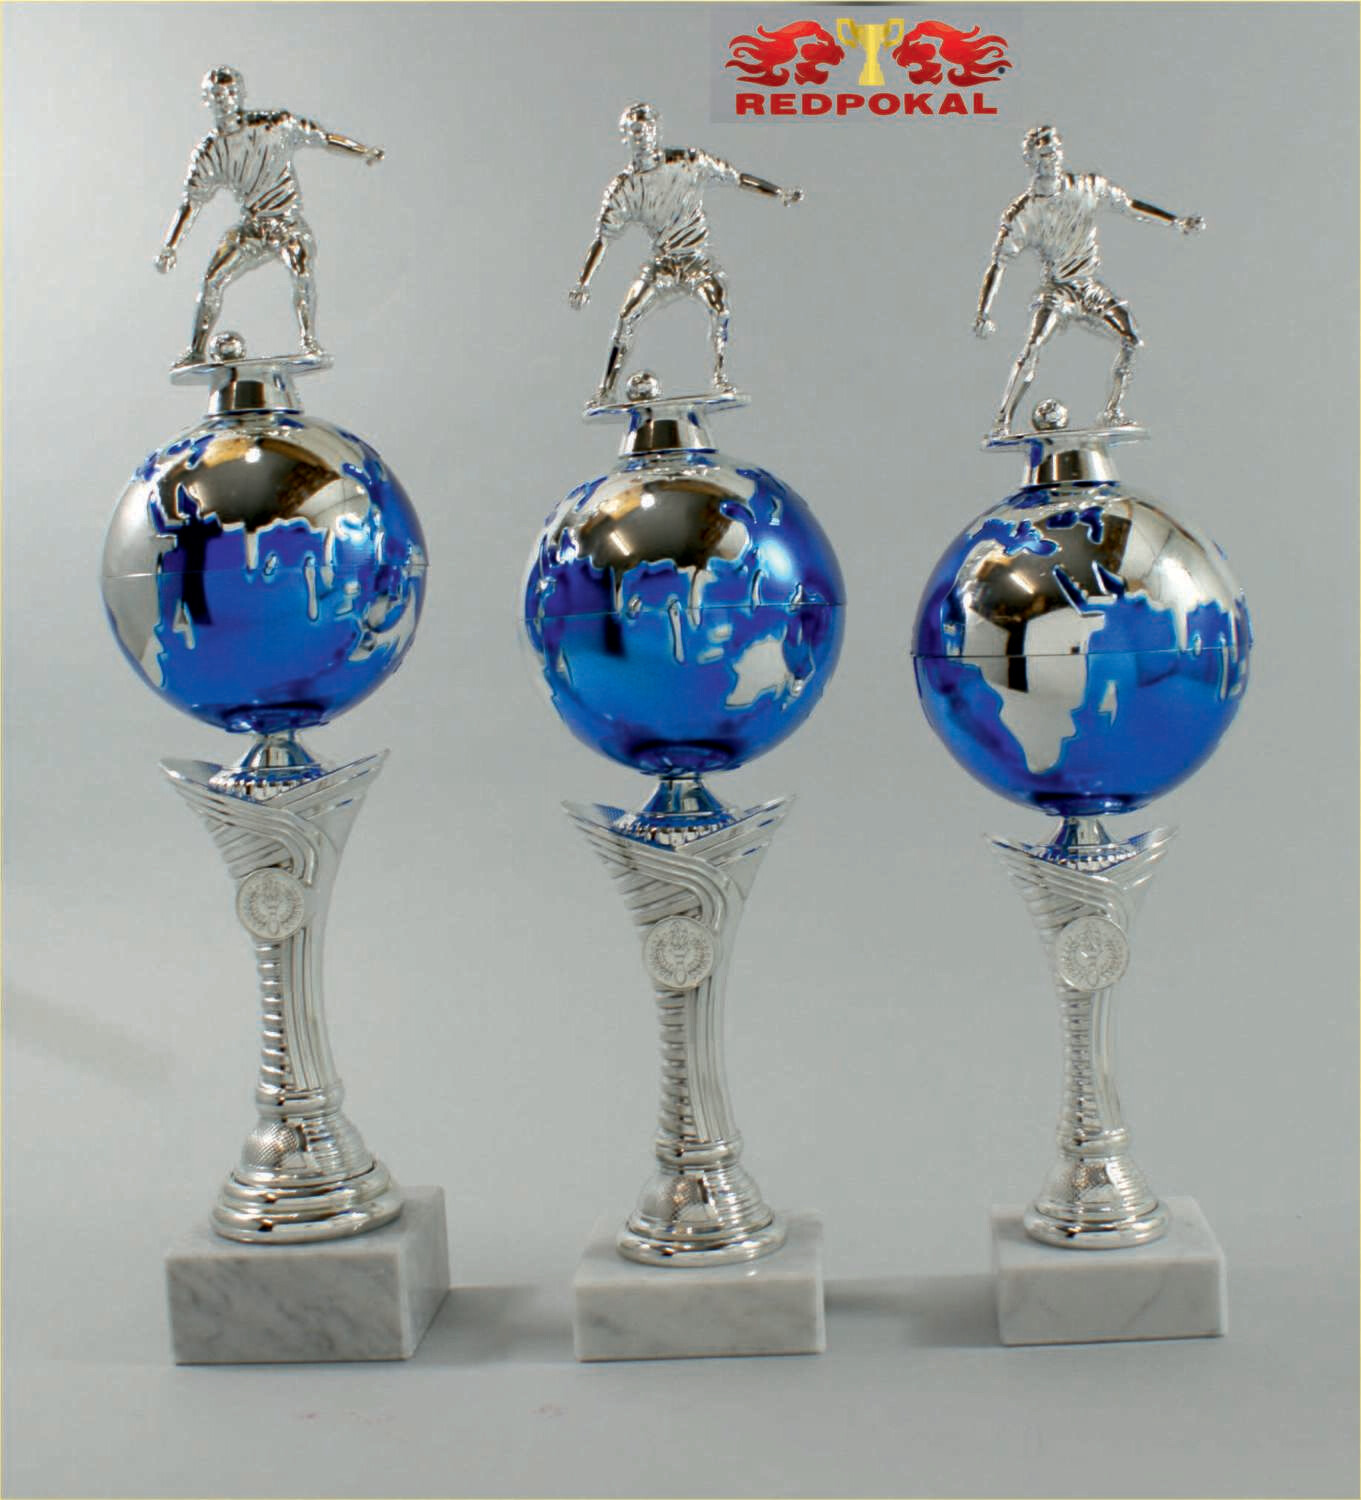 3er Serie Ständer Weltpokal silber-blau mit Fußballfigur, 43 - 48 cm E561/1-3